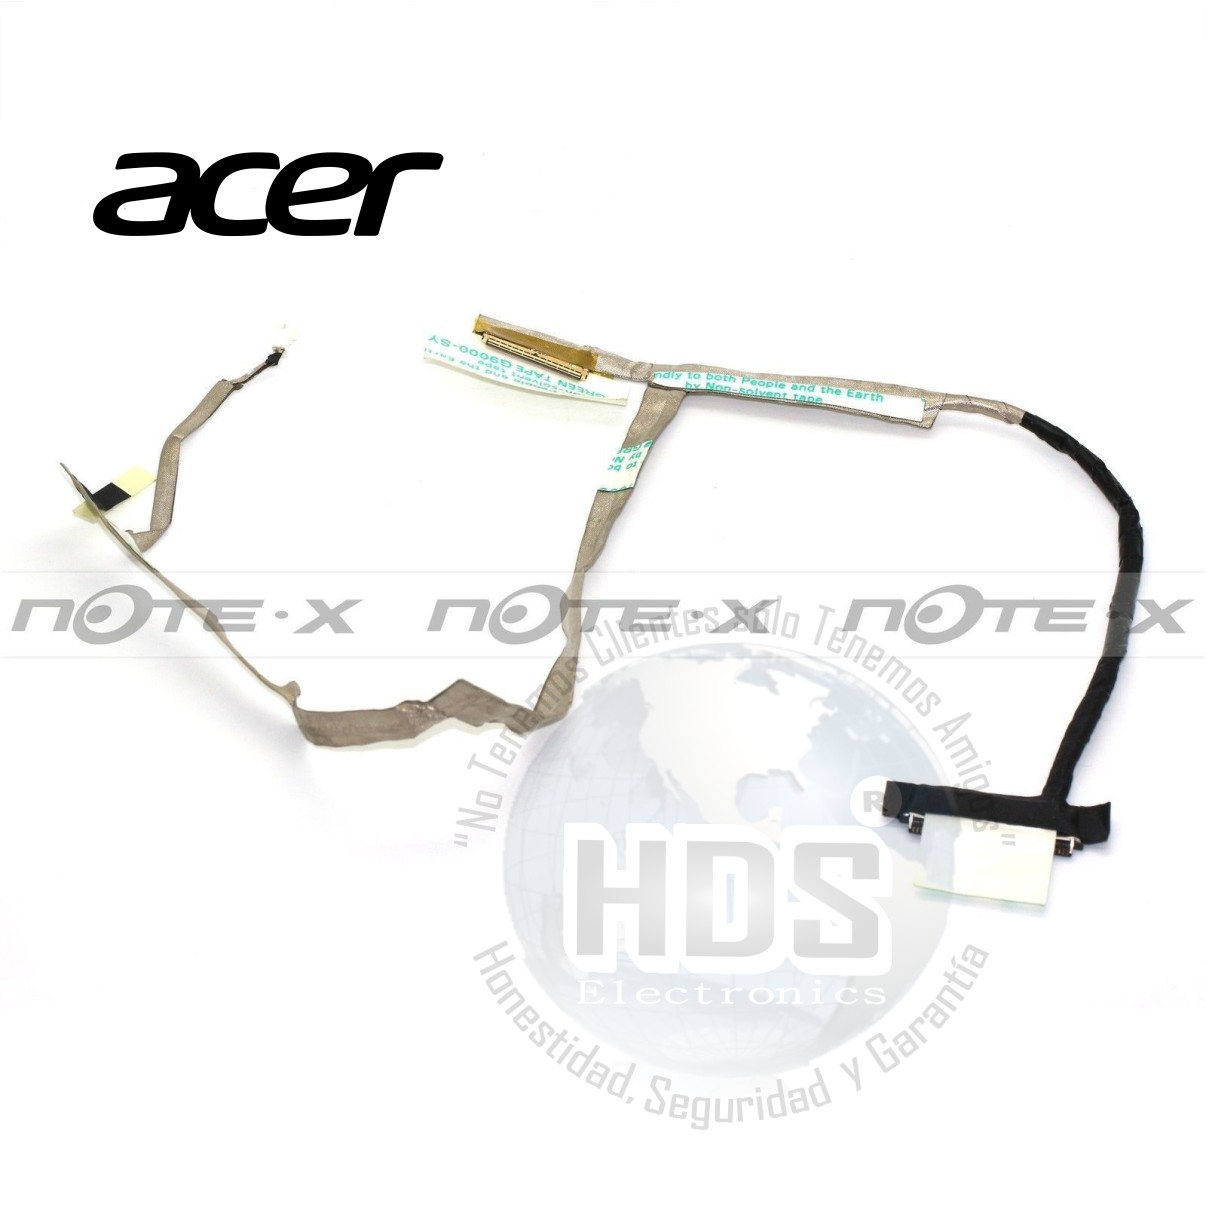 Cable Flex Acer Aspire V5-571 V5-471